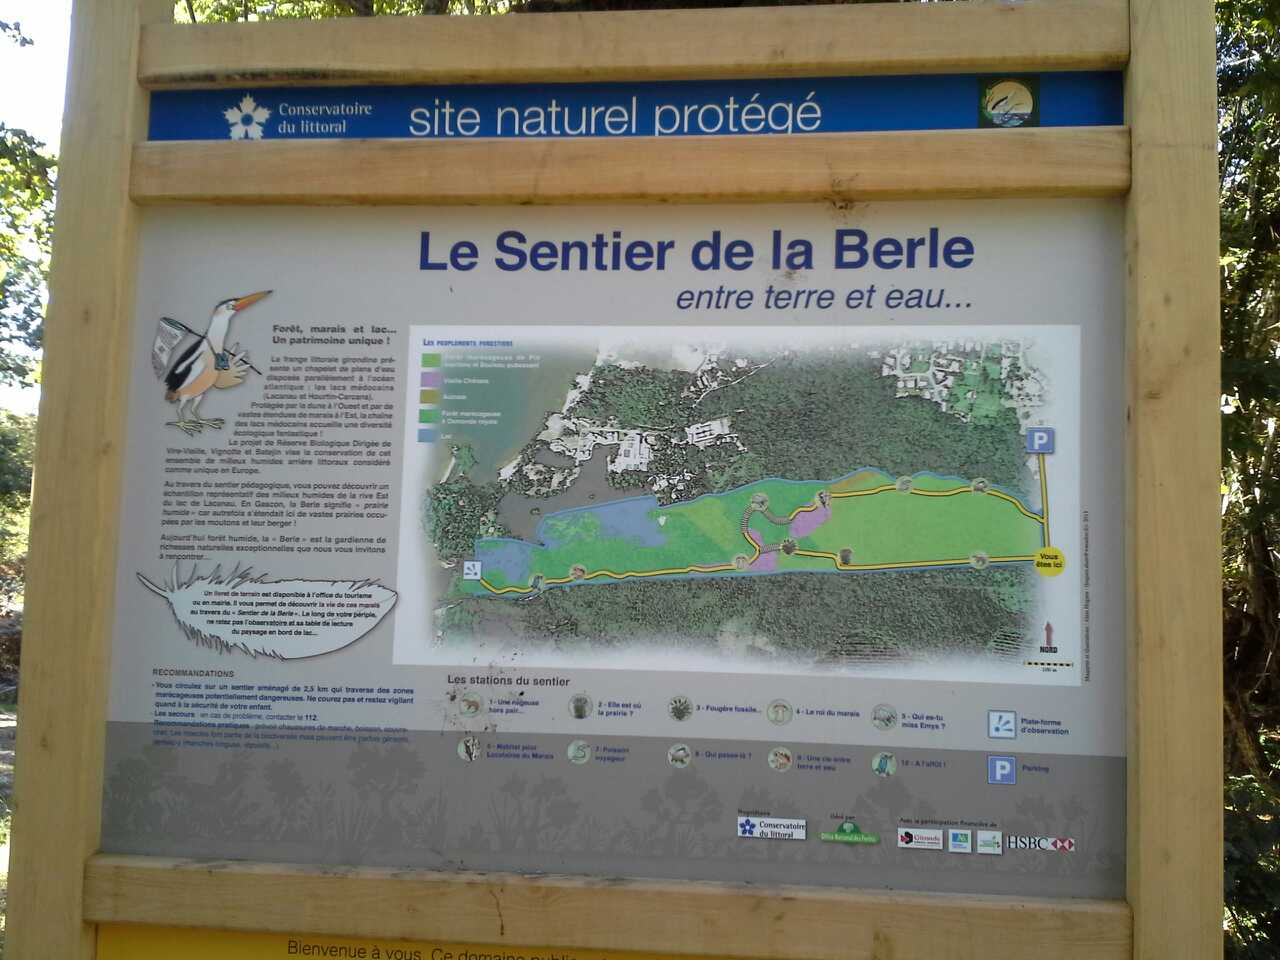 El sendero de Berle: ¡un sendero naturalmente divertido!